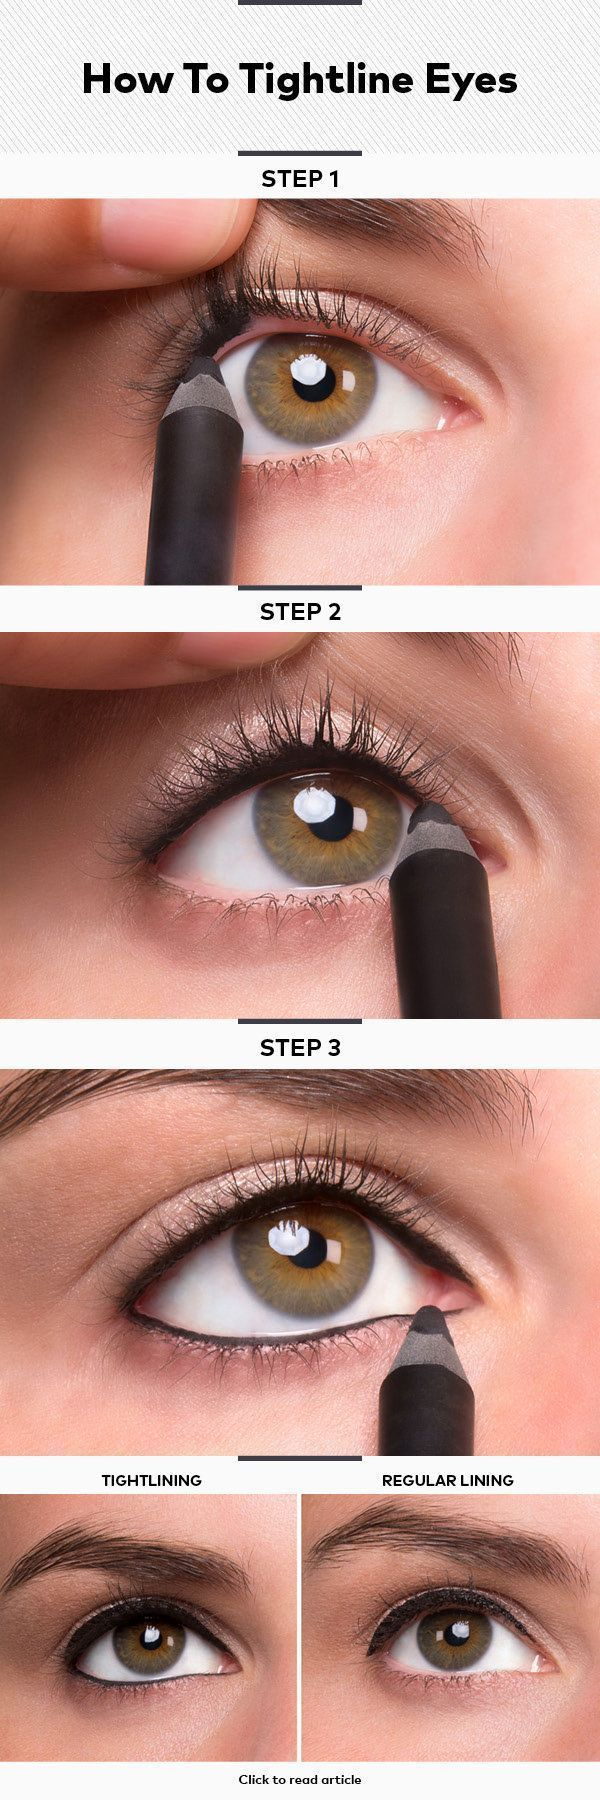 Eye Makeup Tutorial For Beginners 17 Super Basic Eye Makeup Ideas For Beginners Pretty Designs